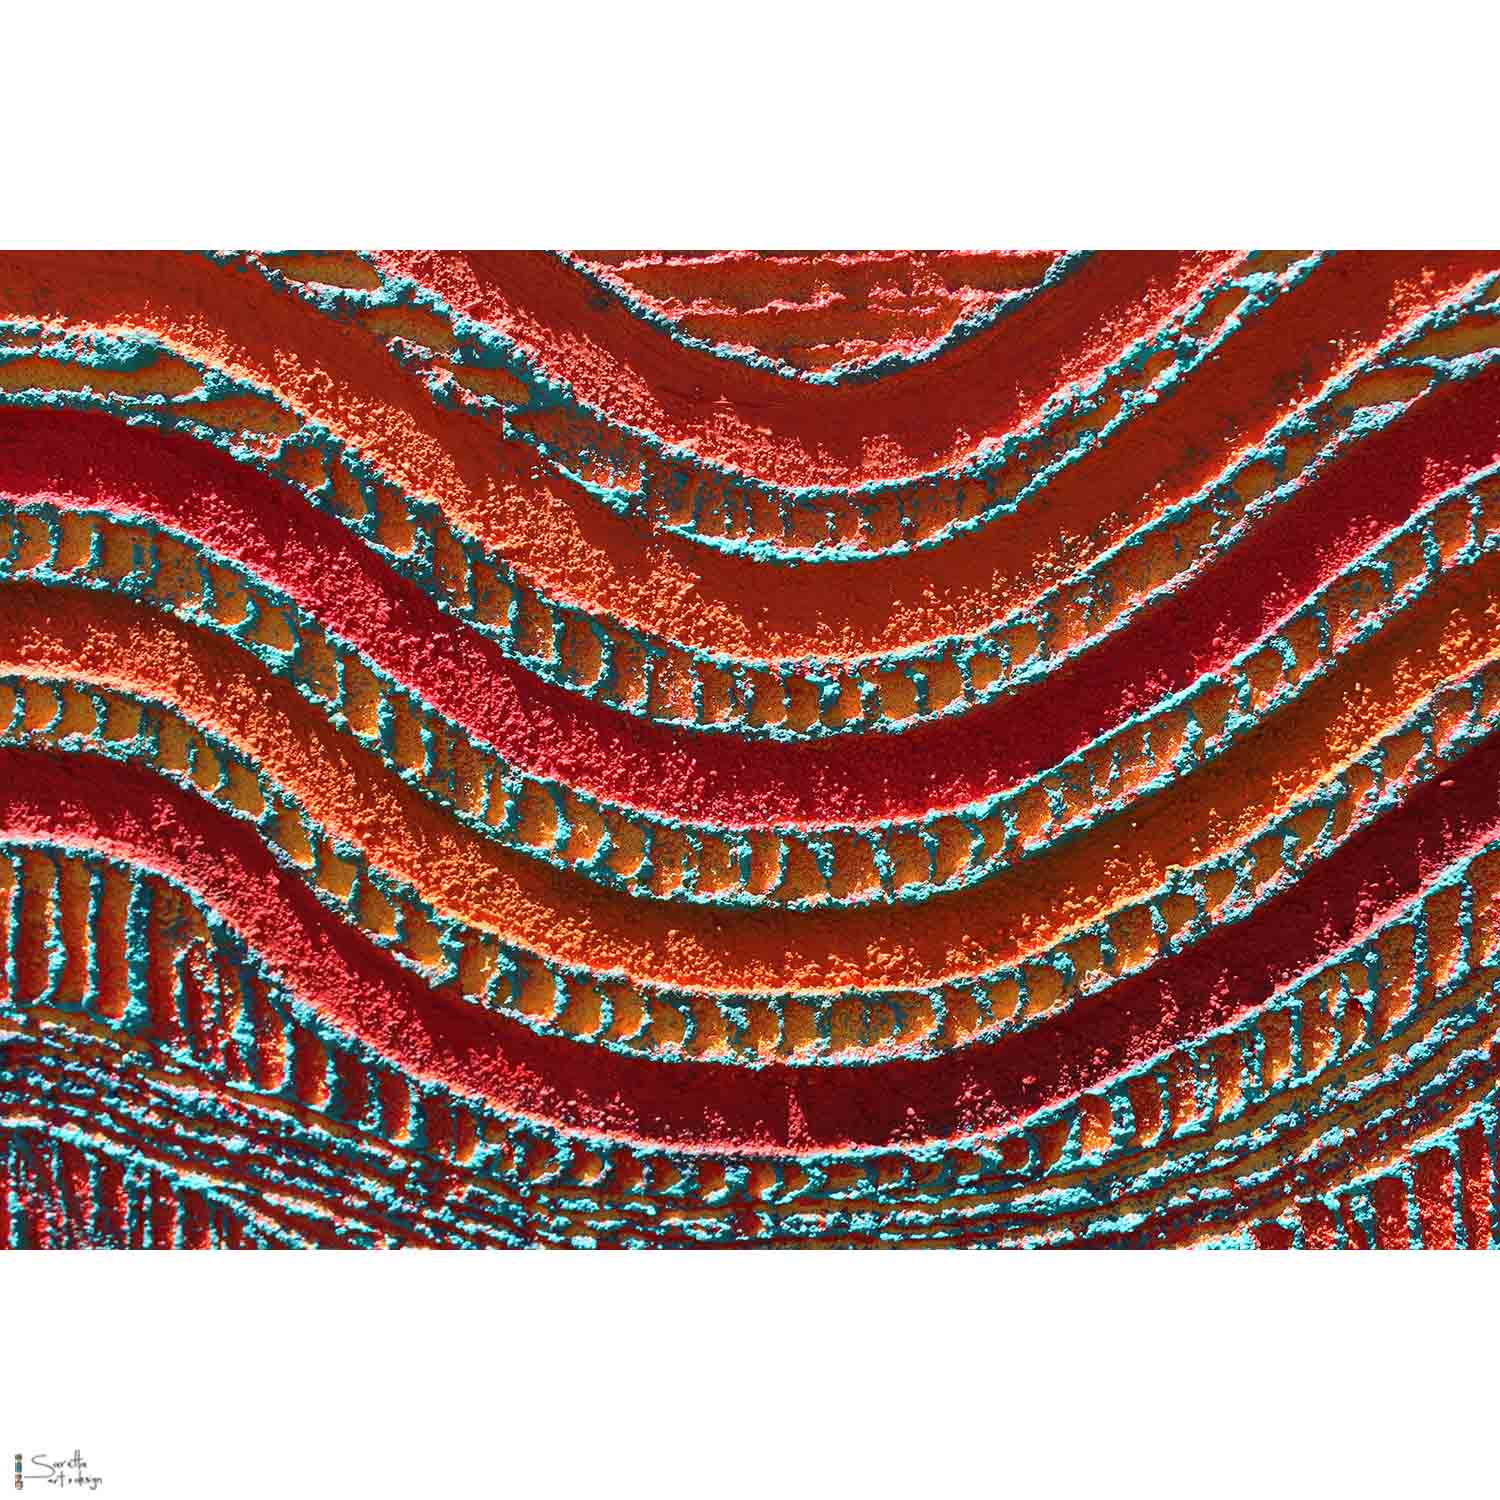 Ngeyran Malang Weaving – ‘Us All’ Together - Saretta Art & Design